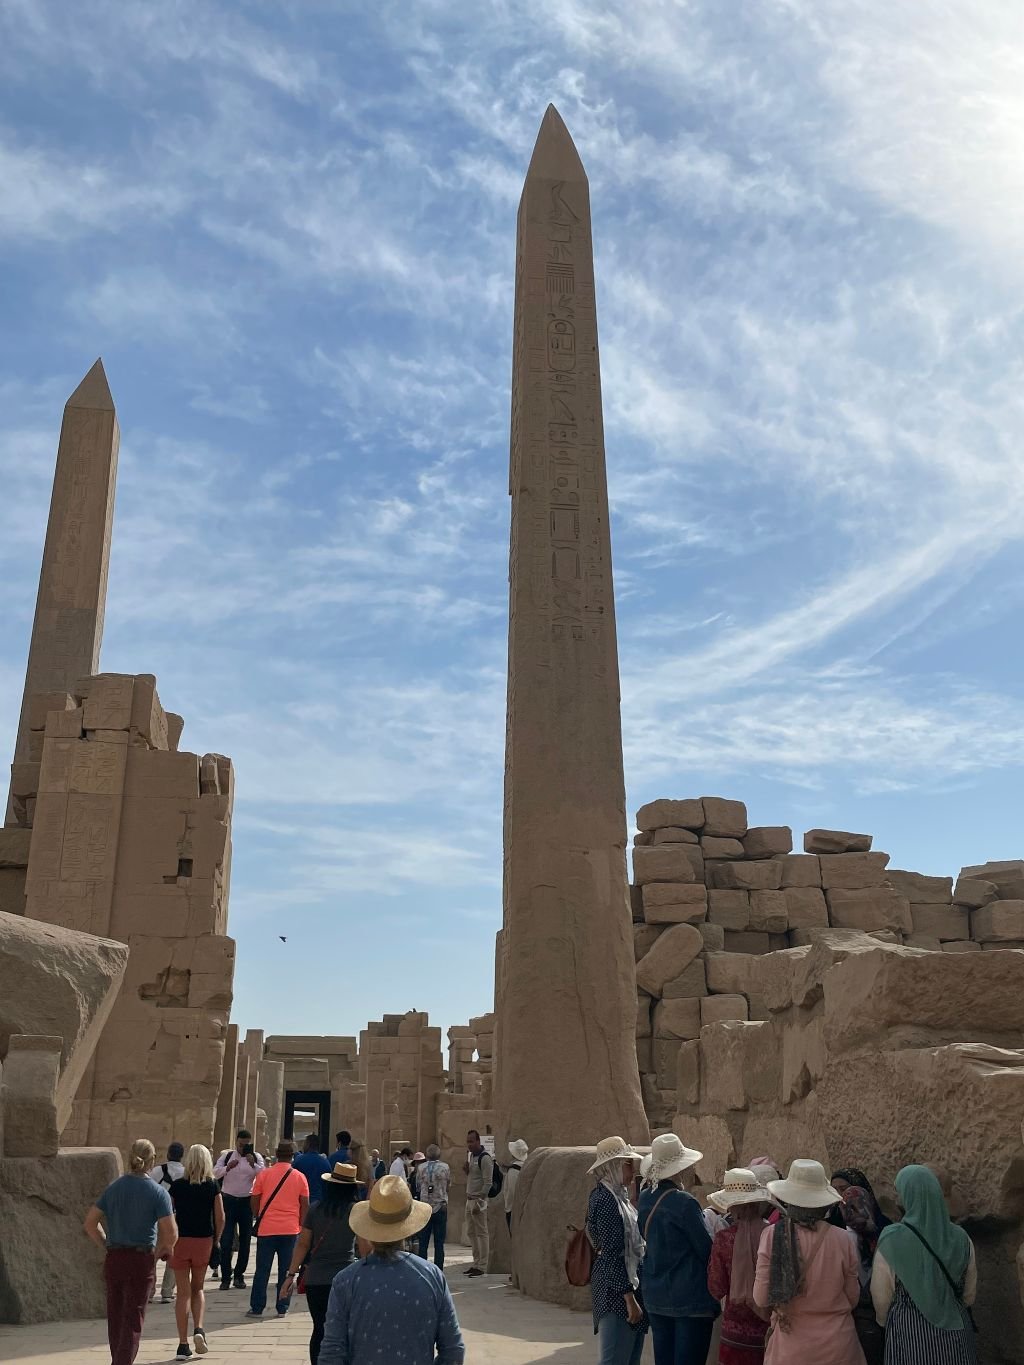 Obelisks at Karnak Temple